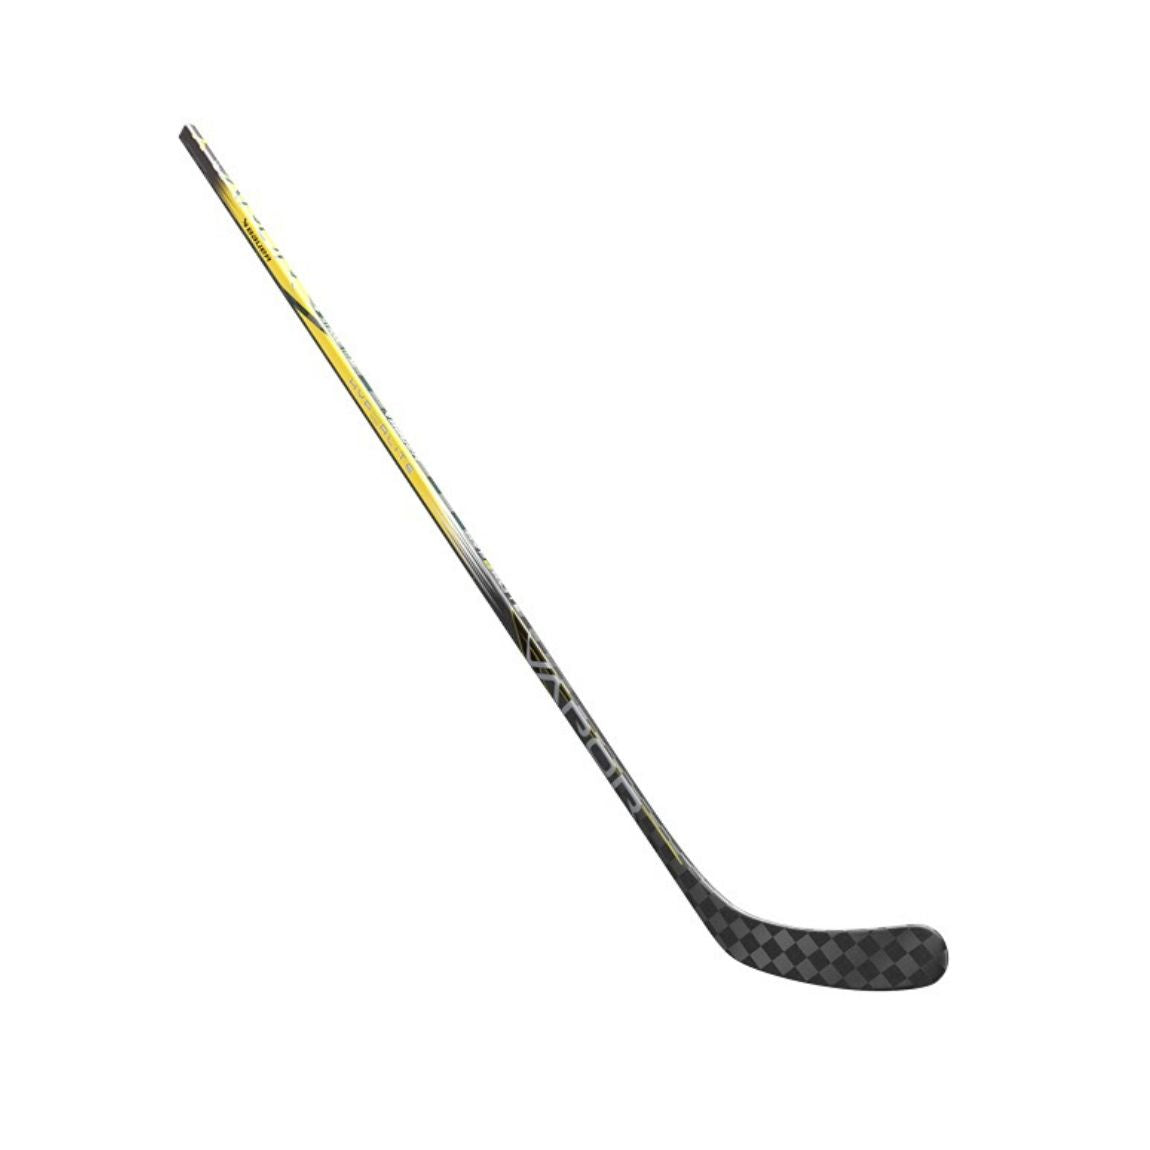 Bauer Vapor Hyperlite 2 Hockey Stick (YELLOW) - Junior